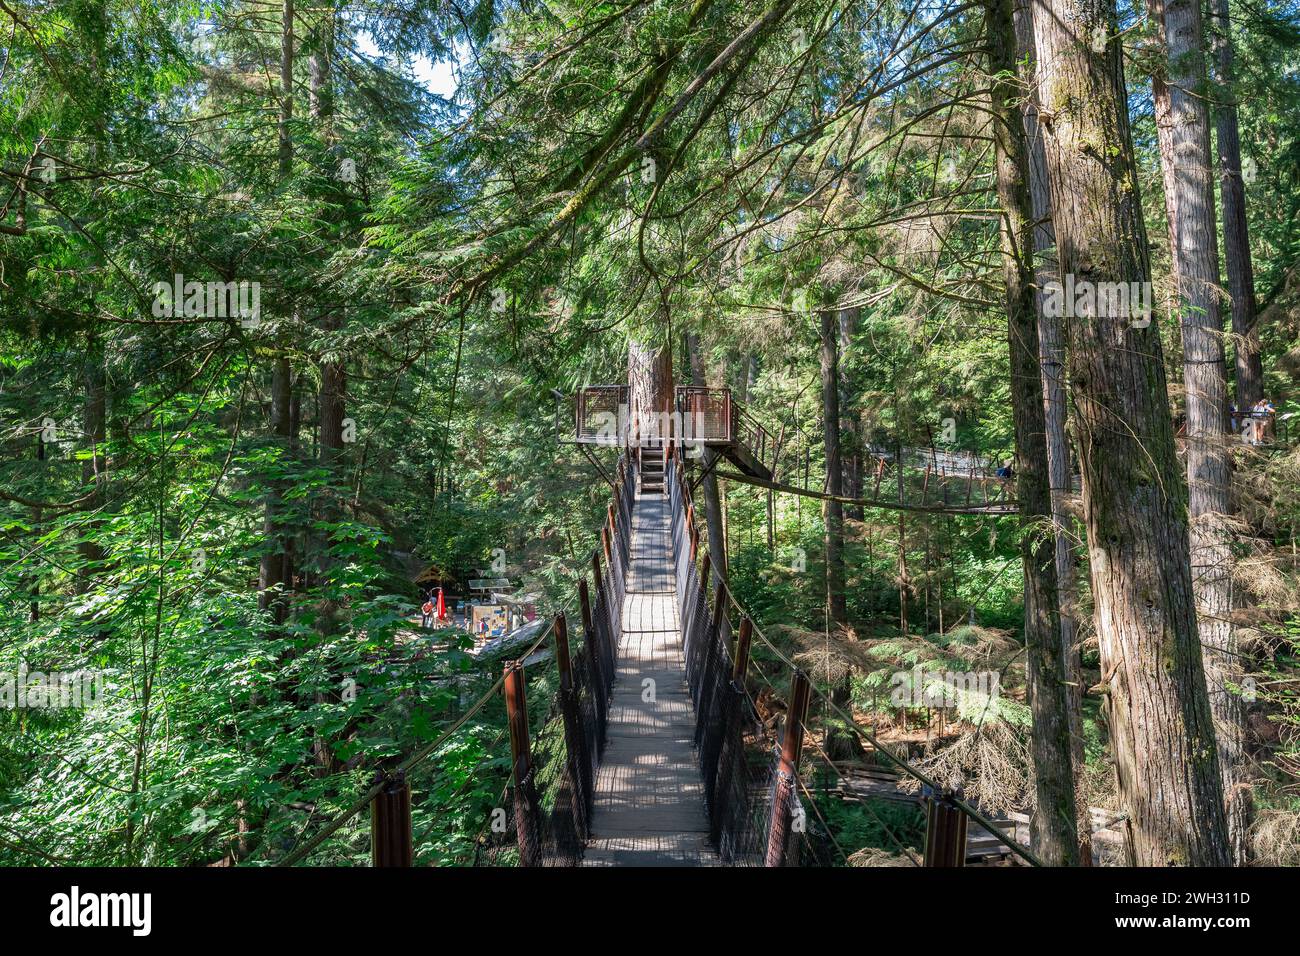 A treetop suspension bridge at the Capilano Suspension Bridge Park in Vancouver, British Columbia. Stock Photo